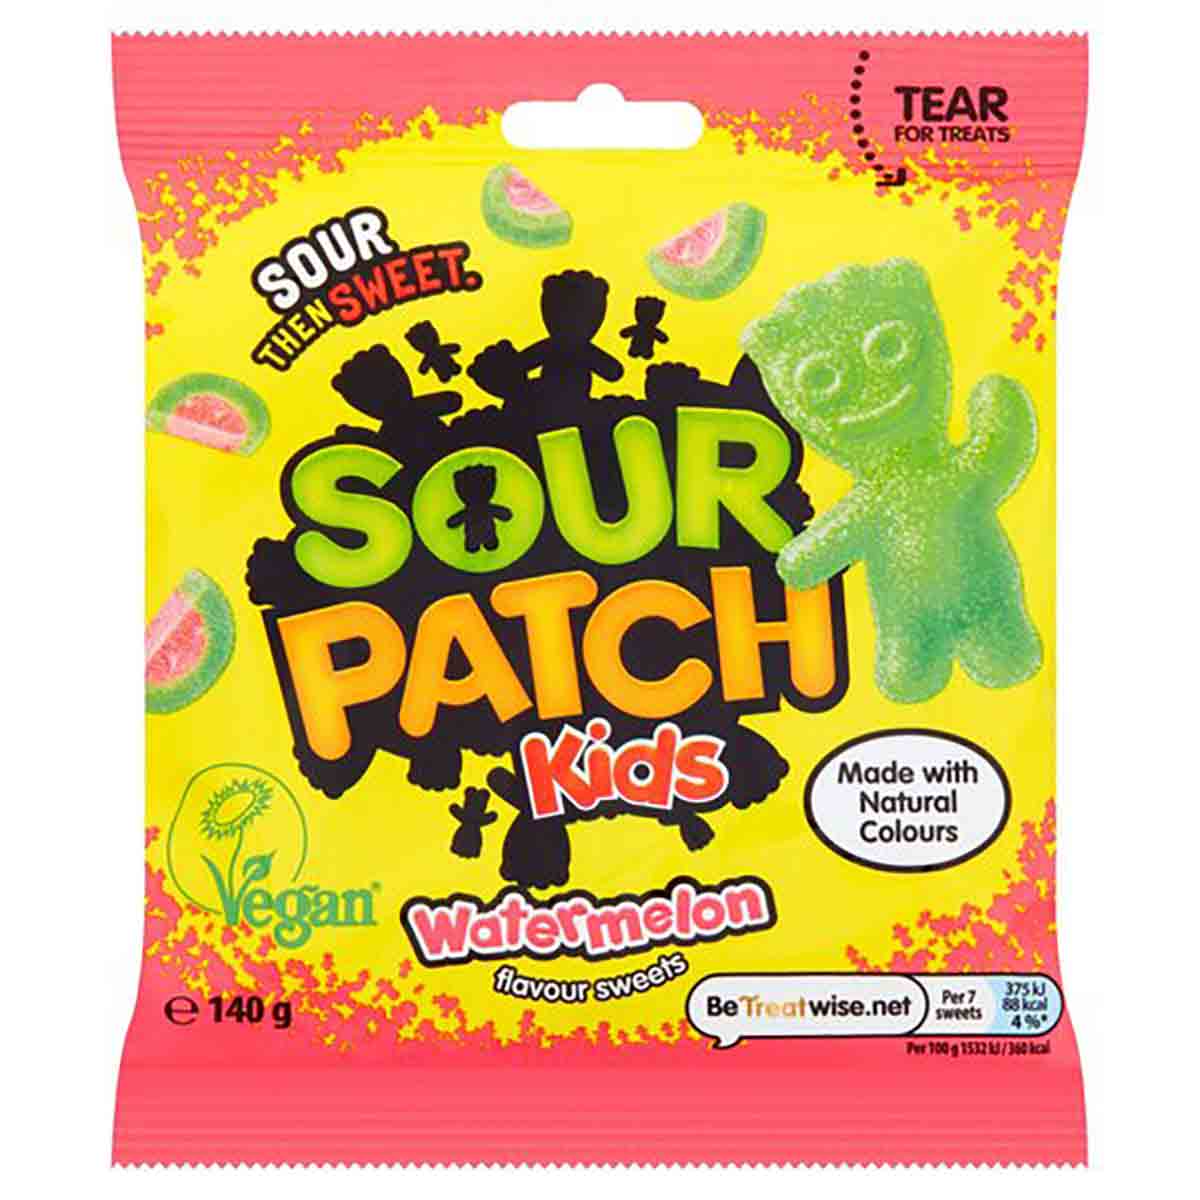 Vegan Sour Patch Kids Bag